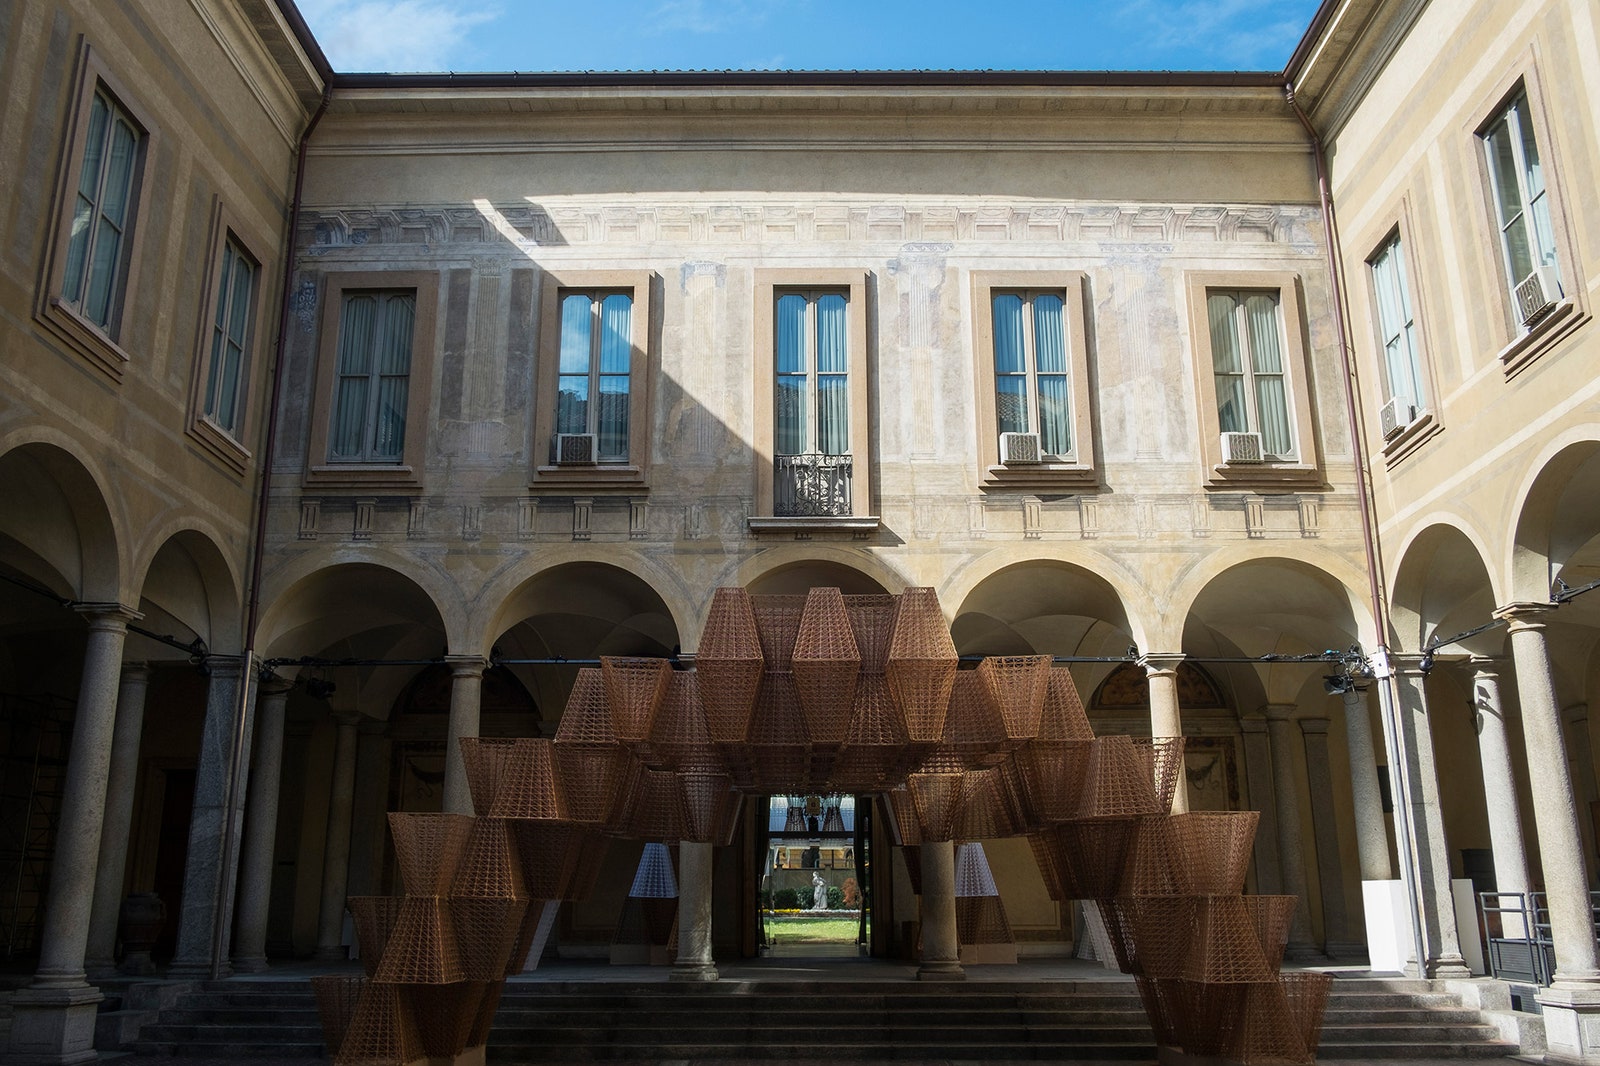 Инсталляция COS и Артура МамуМани на Milan Design Week 2019 открыта для публики